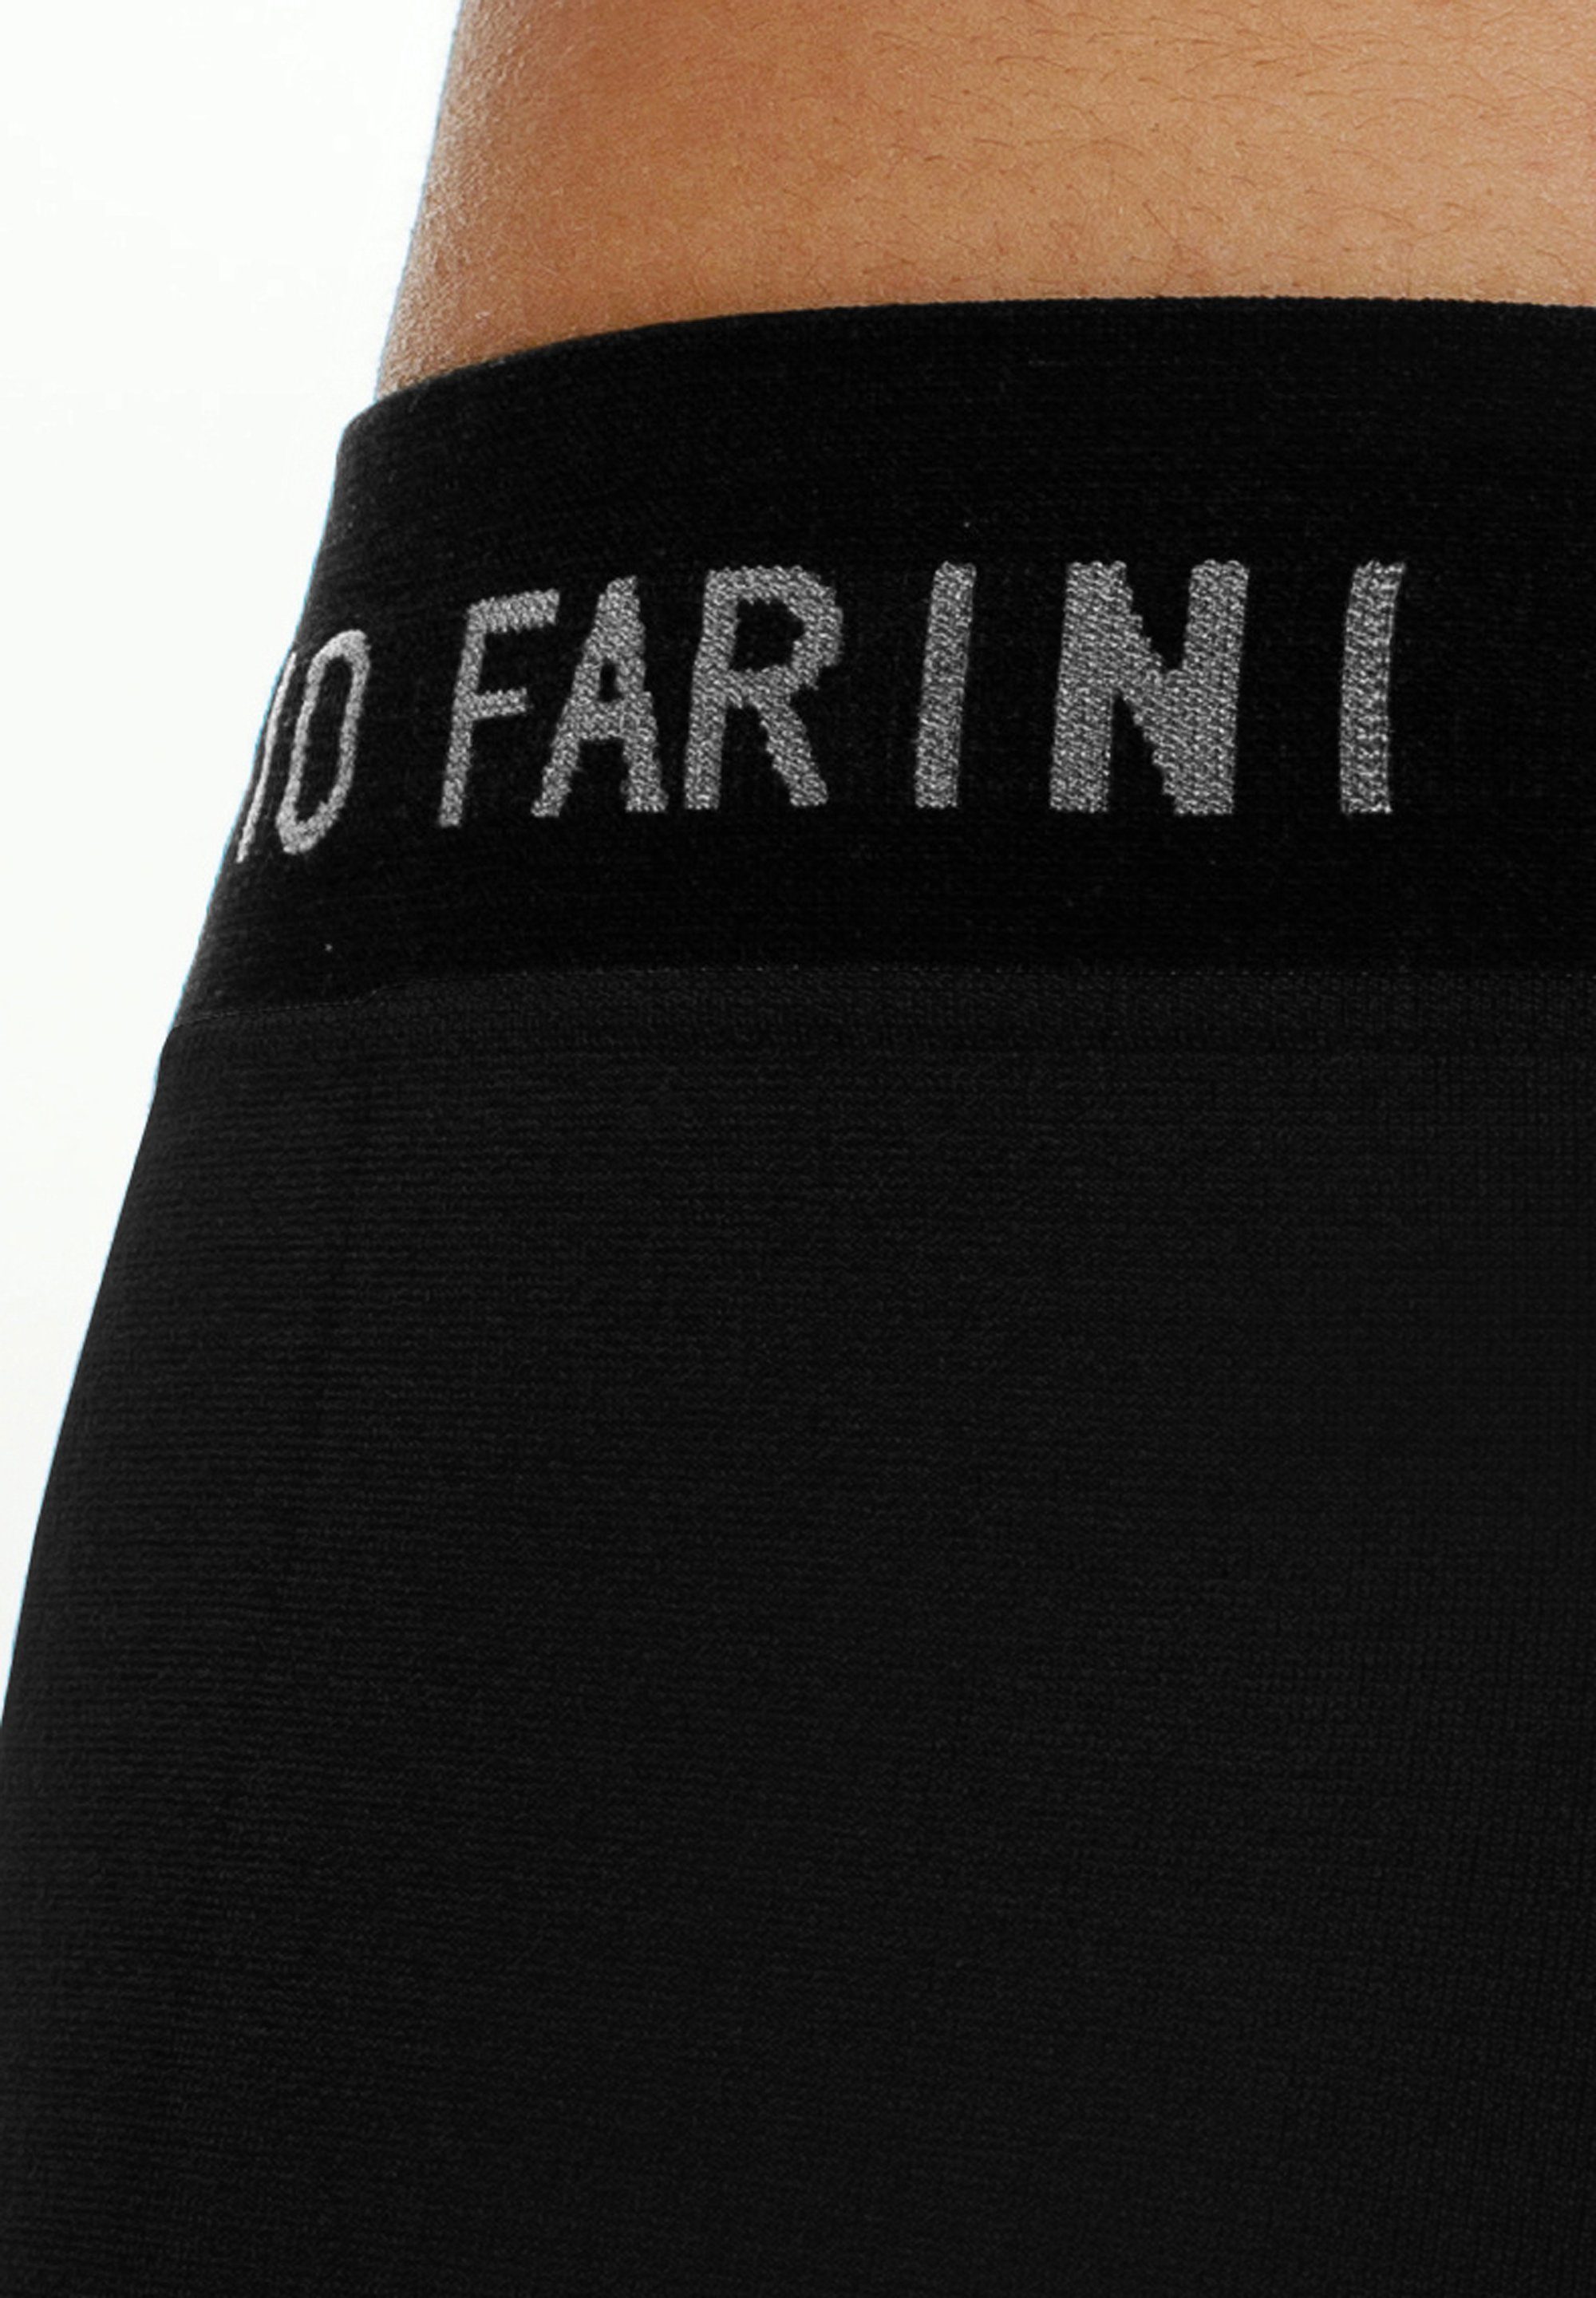 Männer mit 29 Unterhosen - Boxershorts Set (4-St) Look Fabio Farini aus Logoschriftzug im weicher Microfaser sportlichen Herren Retroshorts